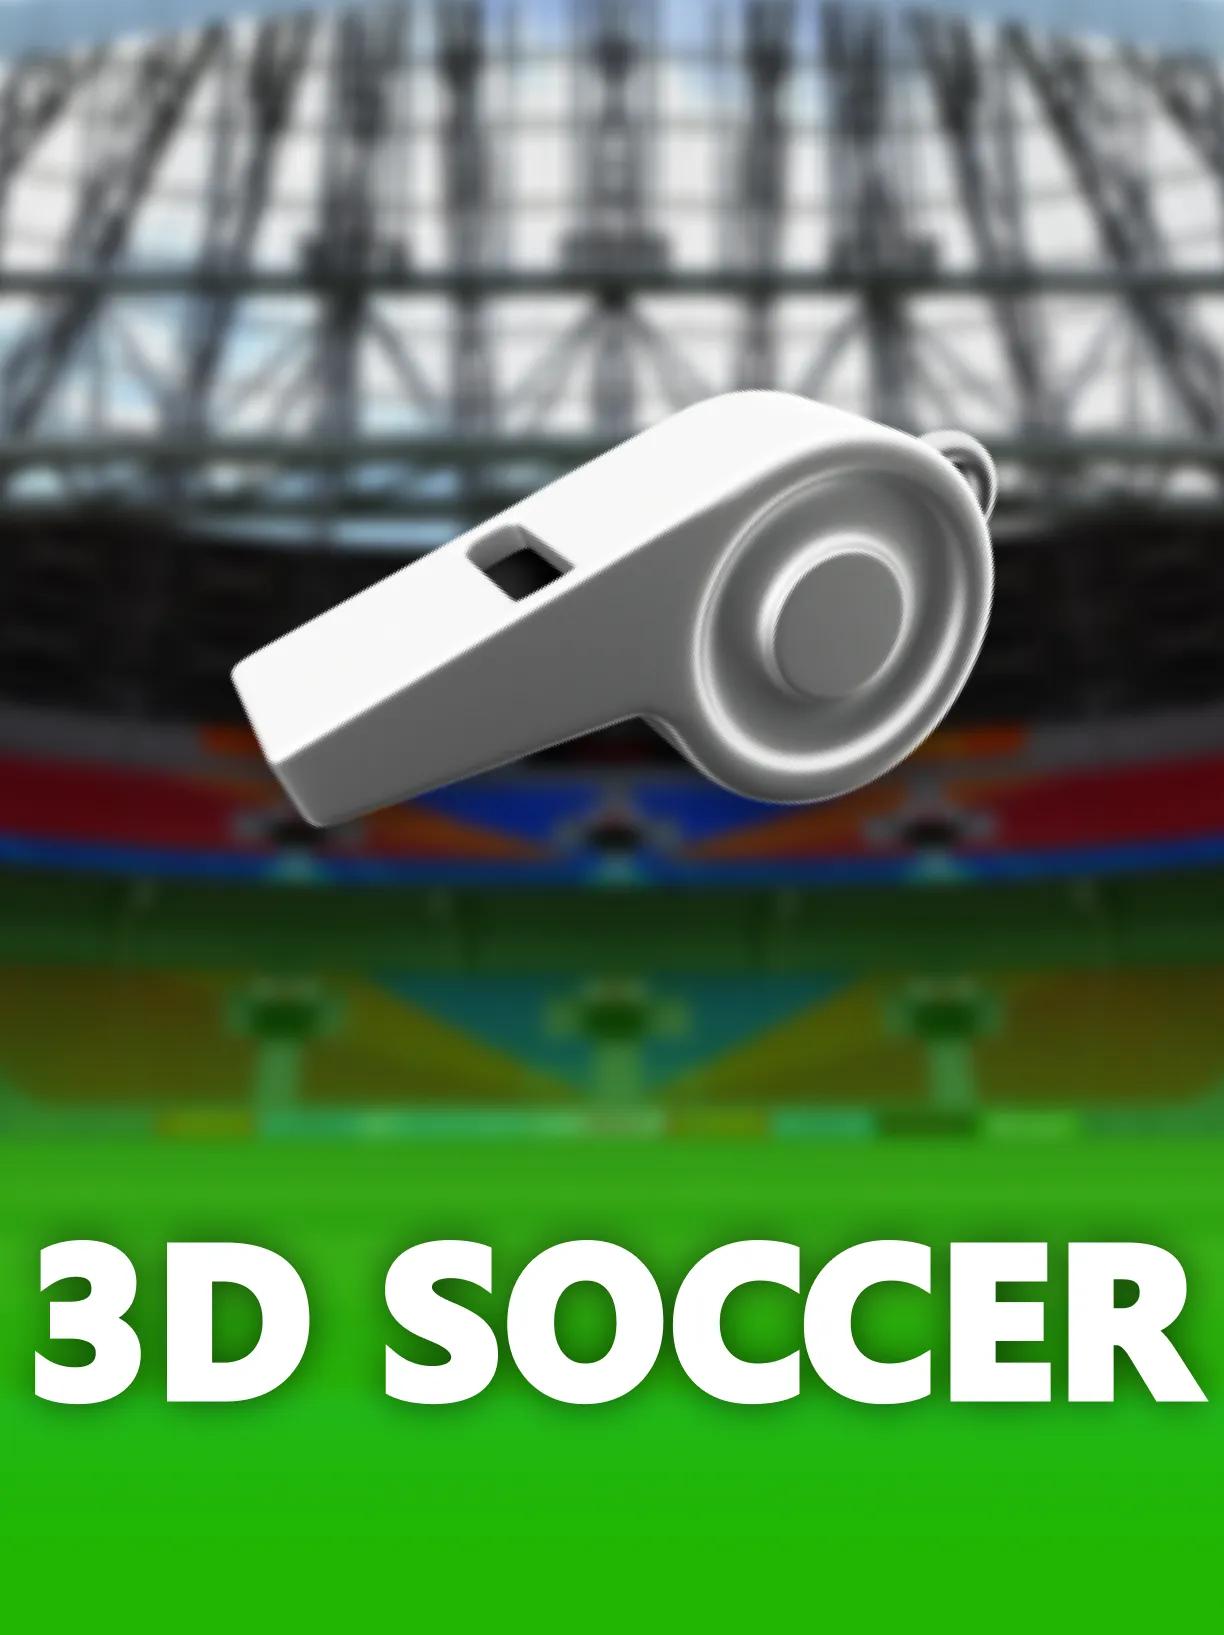 ug_3D_Soccer_square.webp